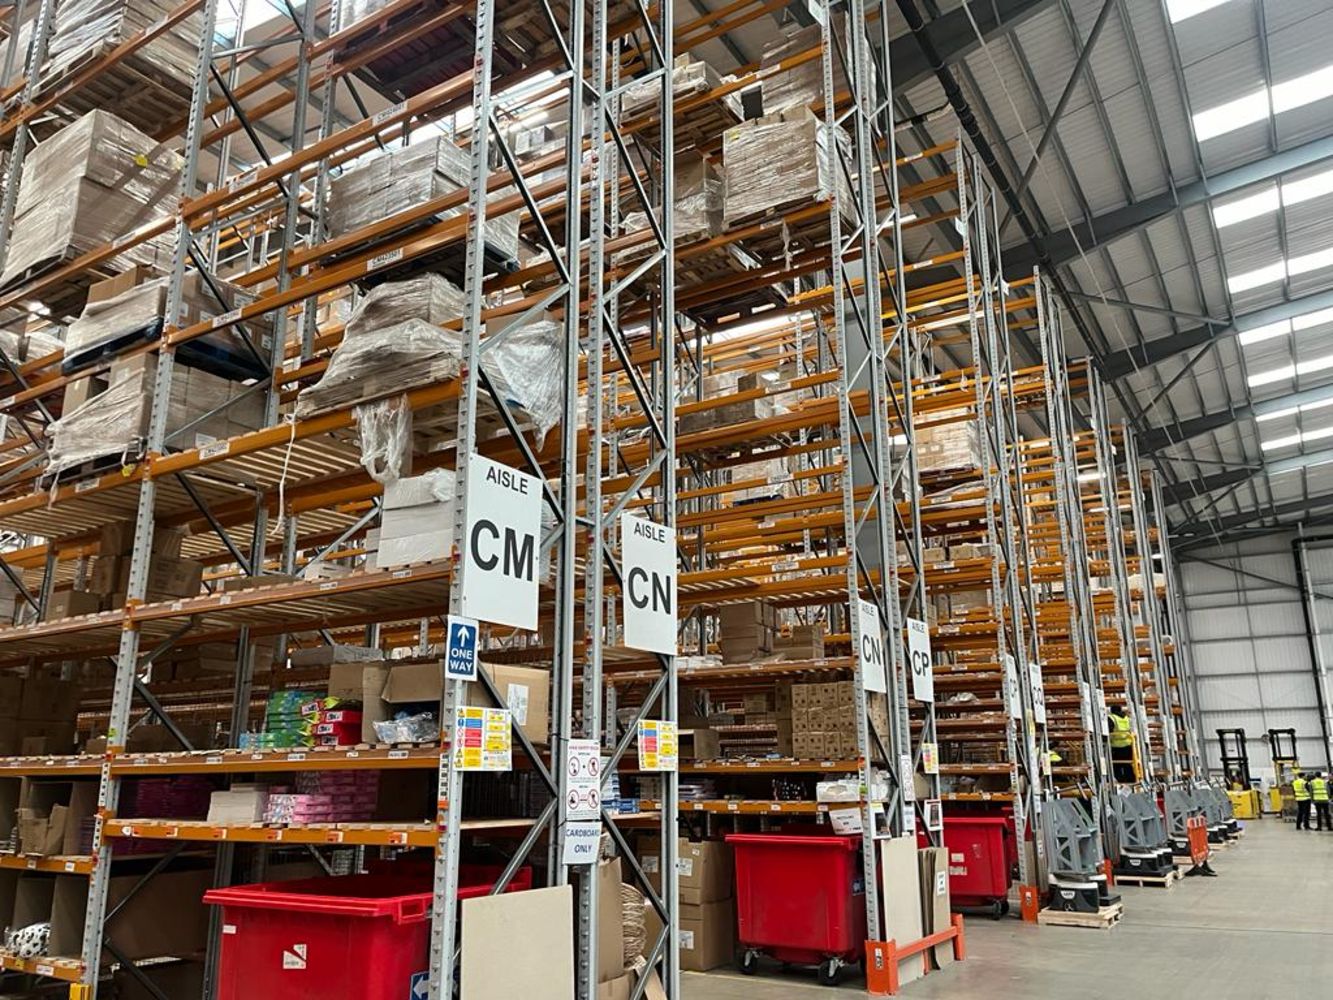 Pallet Racking & Mezzanine Floors  - APEX - LINK 51 - DEXION - JOB LOTS - Industrial Warehouse Equipment